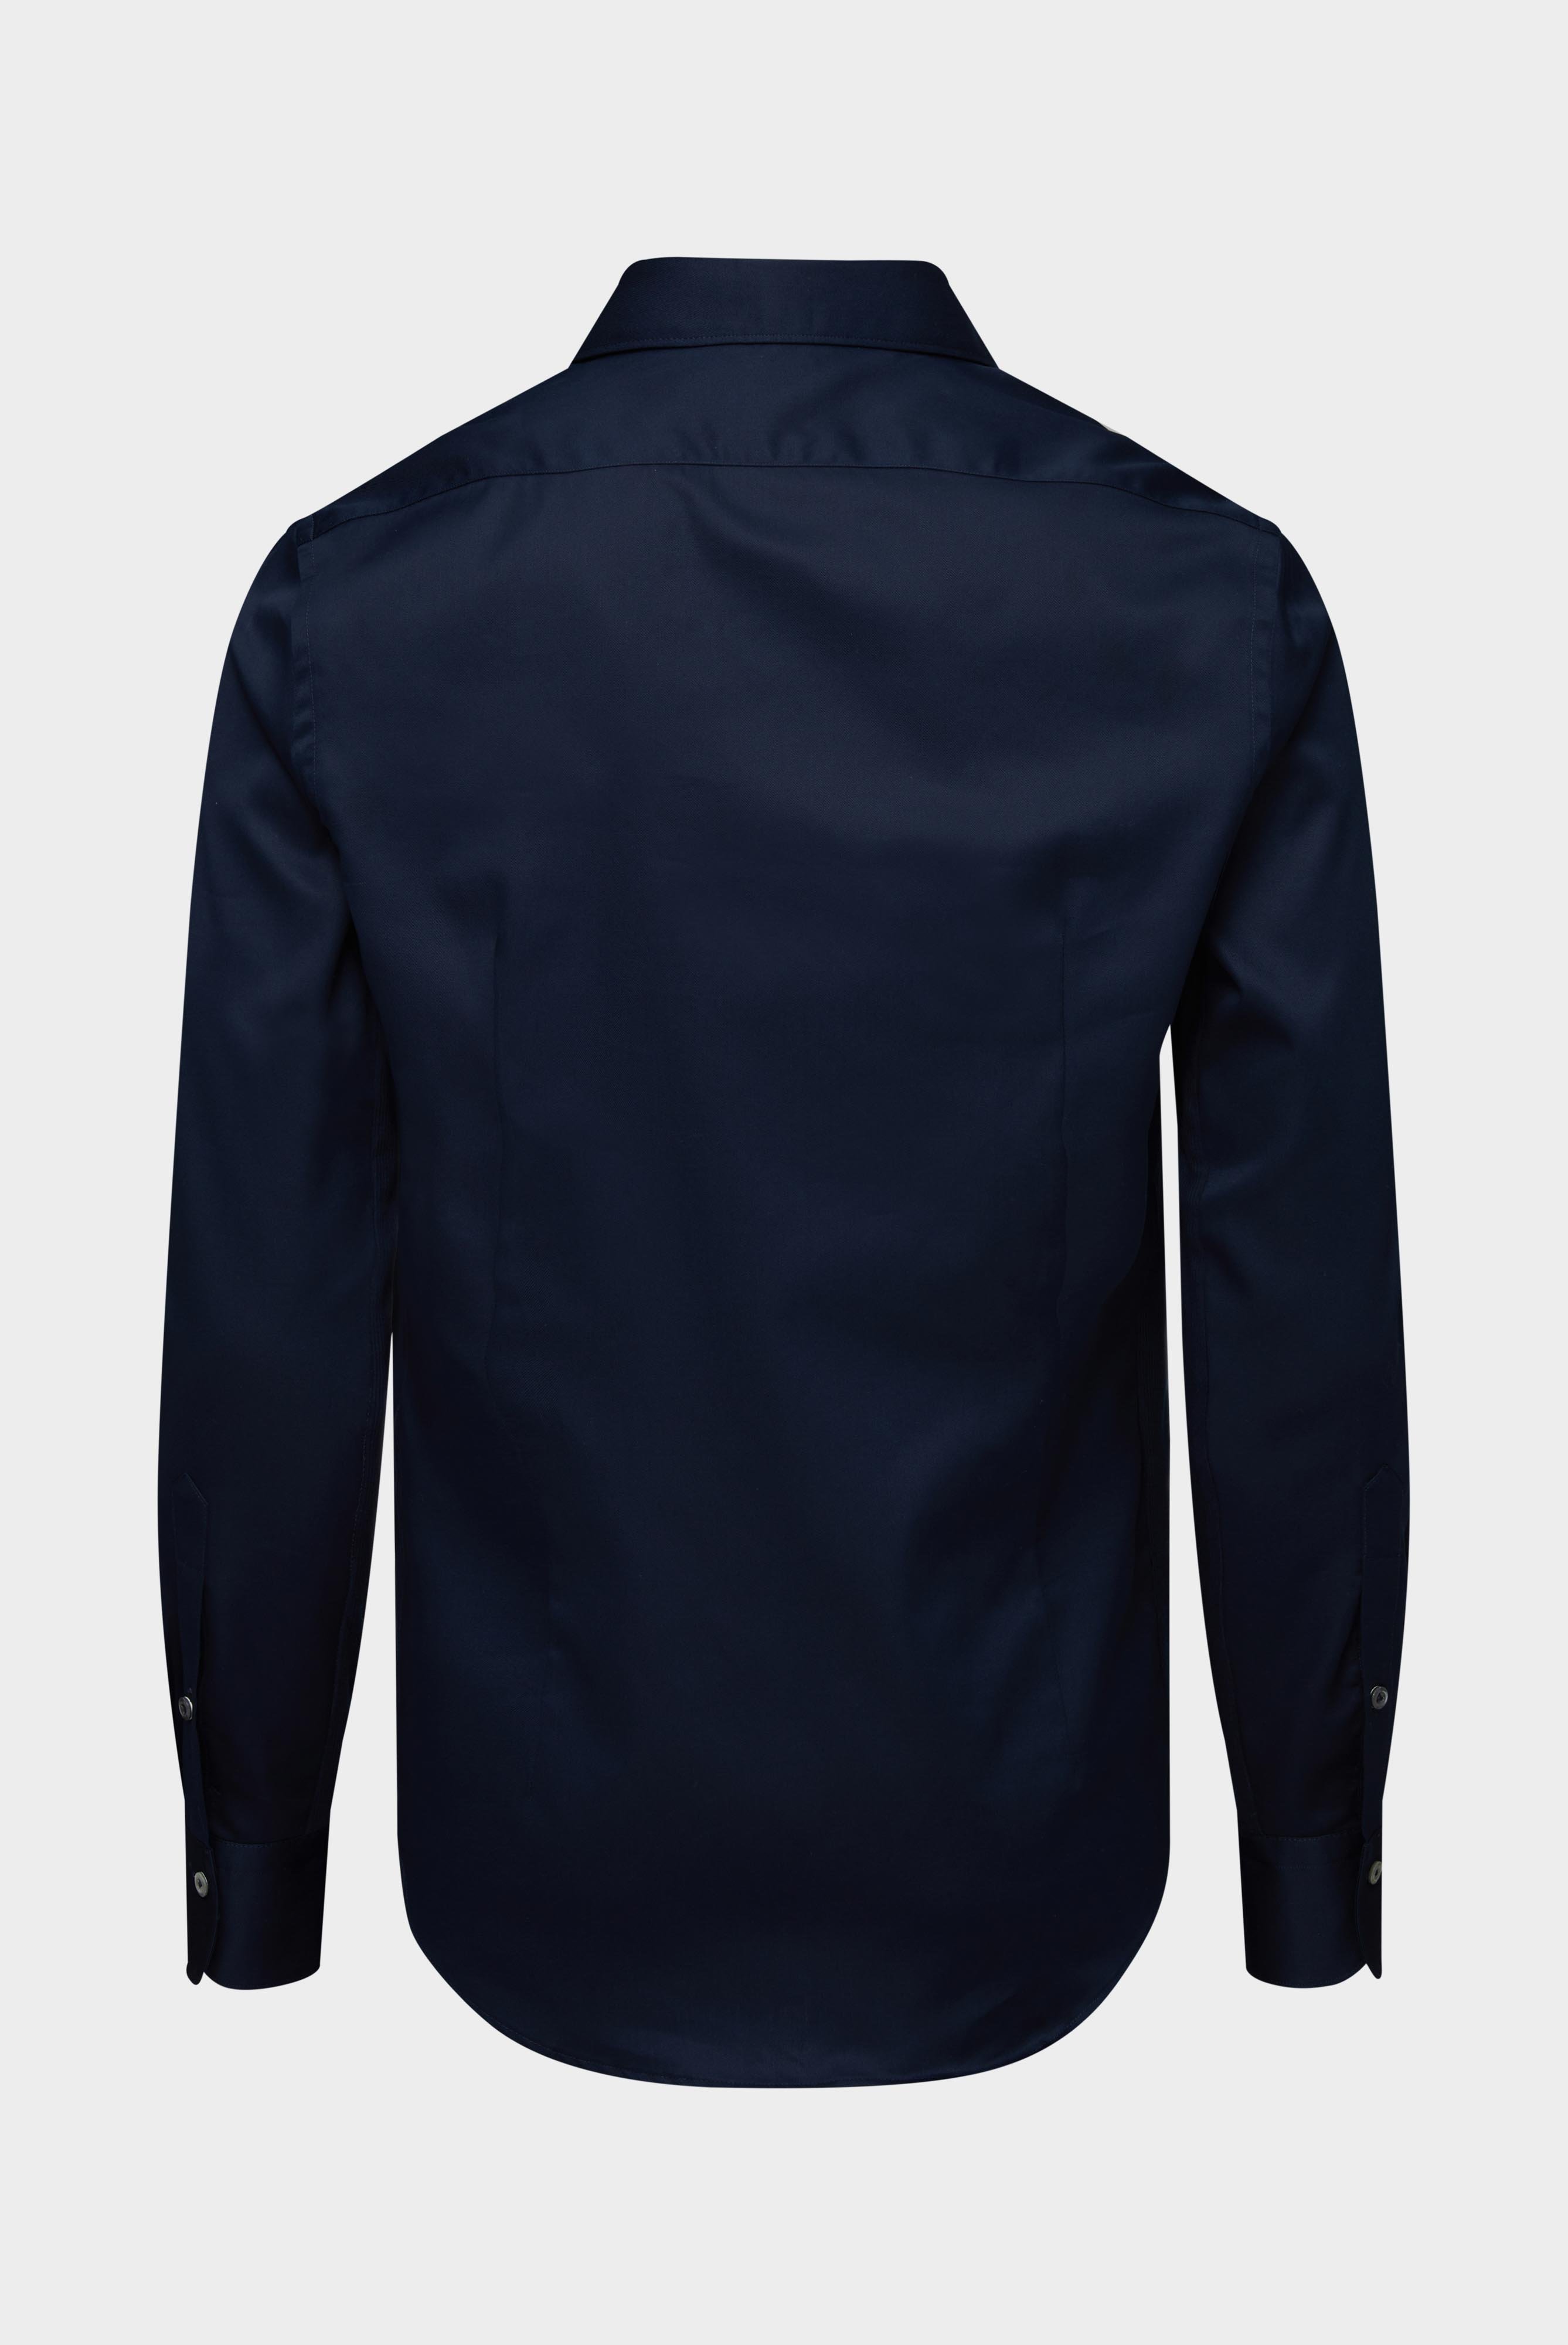 Bügelleichte Hemden+Bügelfreies Hybridshirt mit Jerseyeinsatz Slim Fit+20.2553.0F.132241.785.44